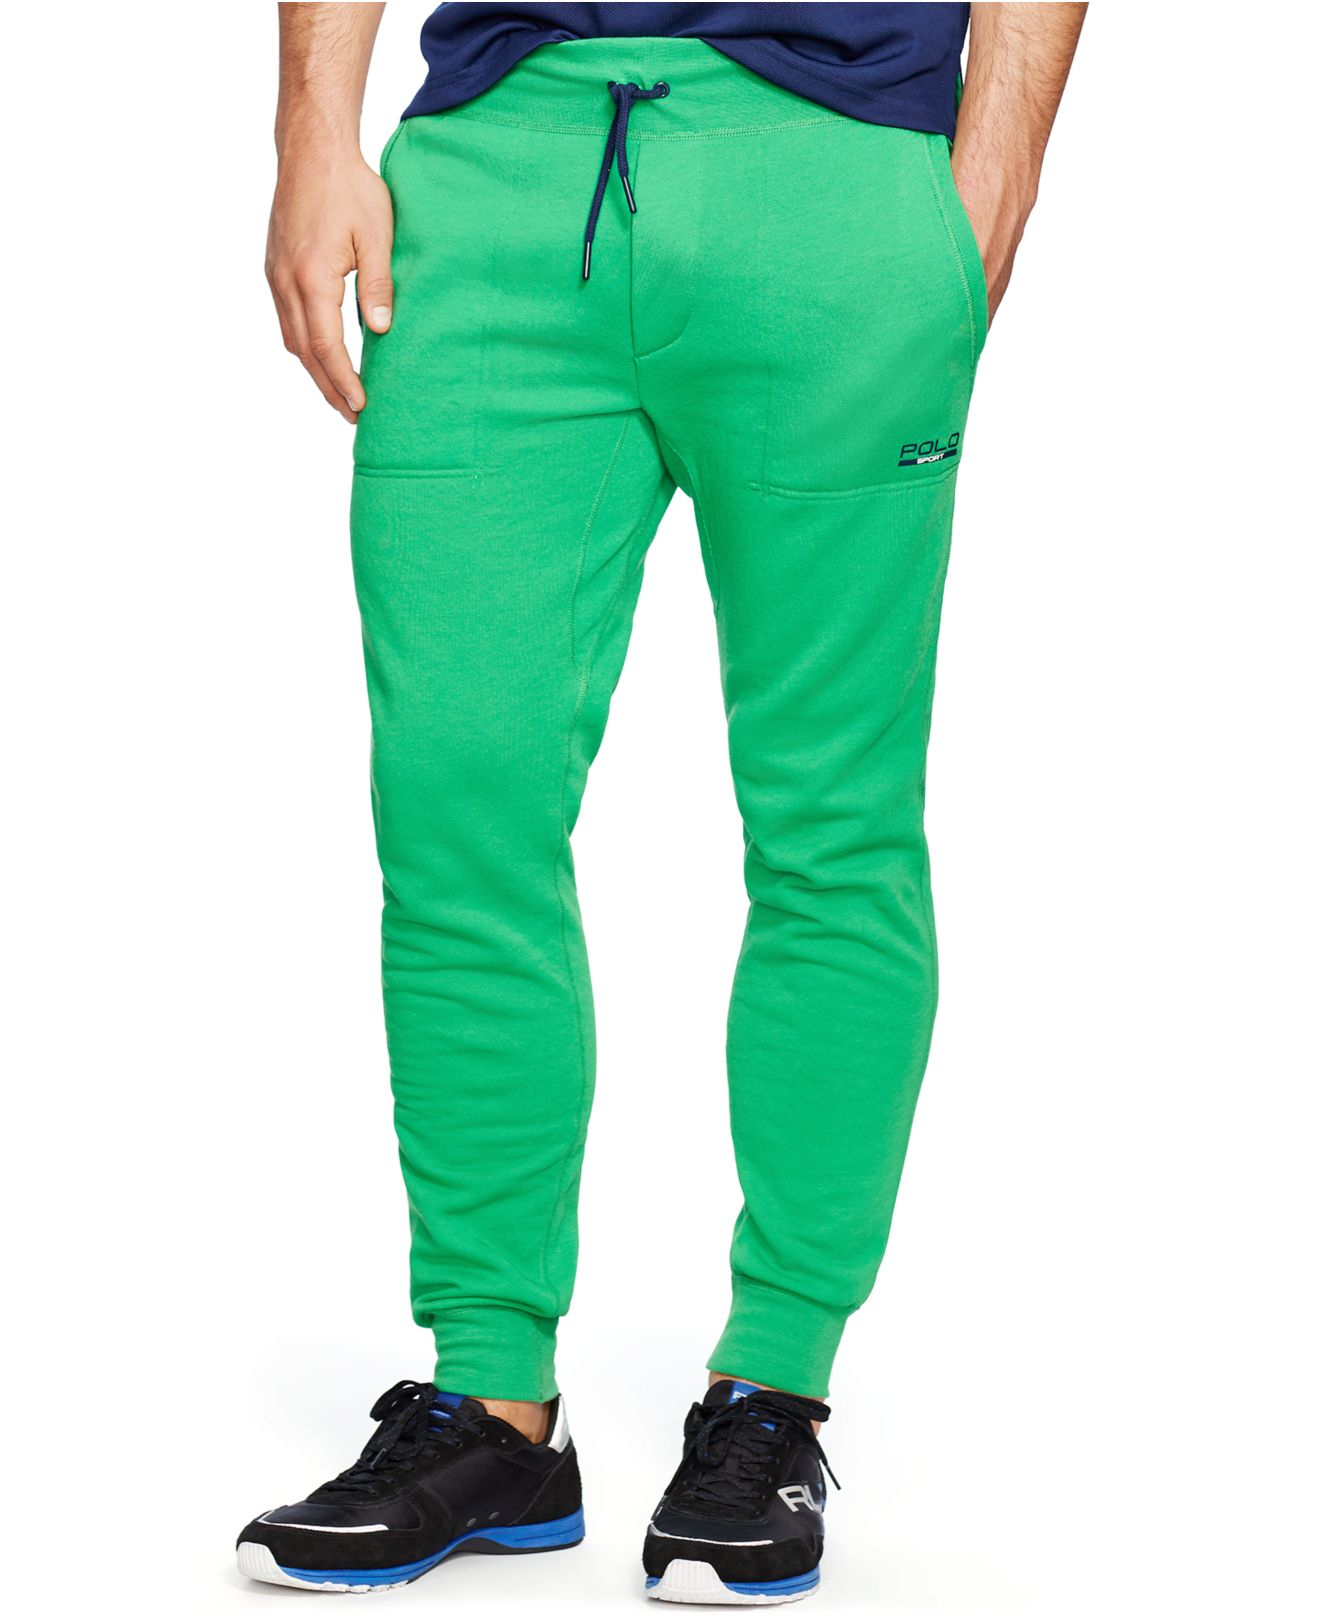 Polo Ralph Lauren Fleece Pants in Green for Men - Lyst